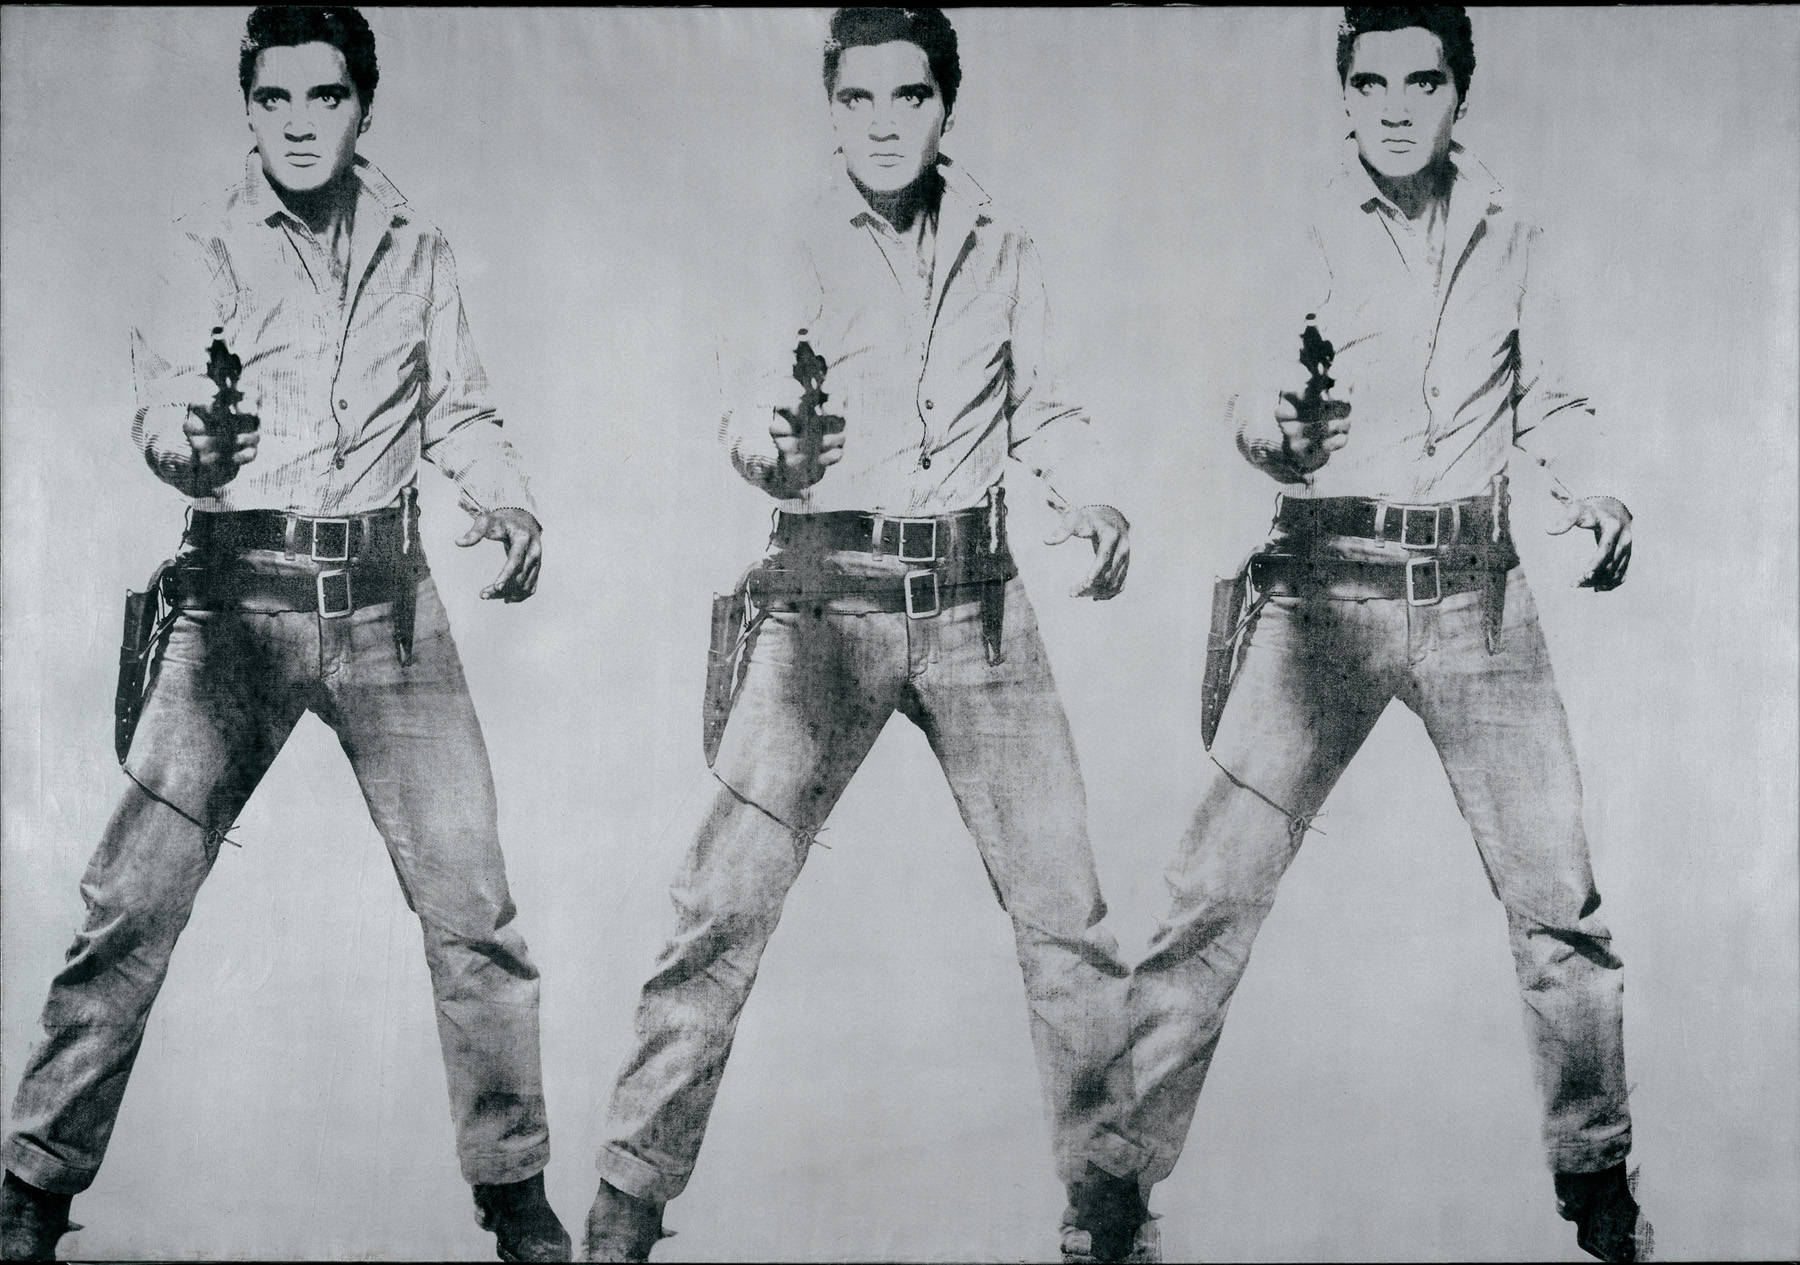 Triplu Elvis by Andy Warhol - 1963 - 208.3 x 299.7 cm 